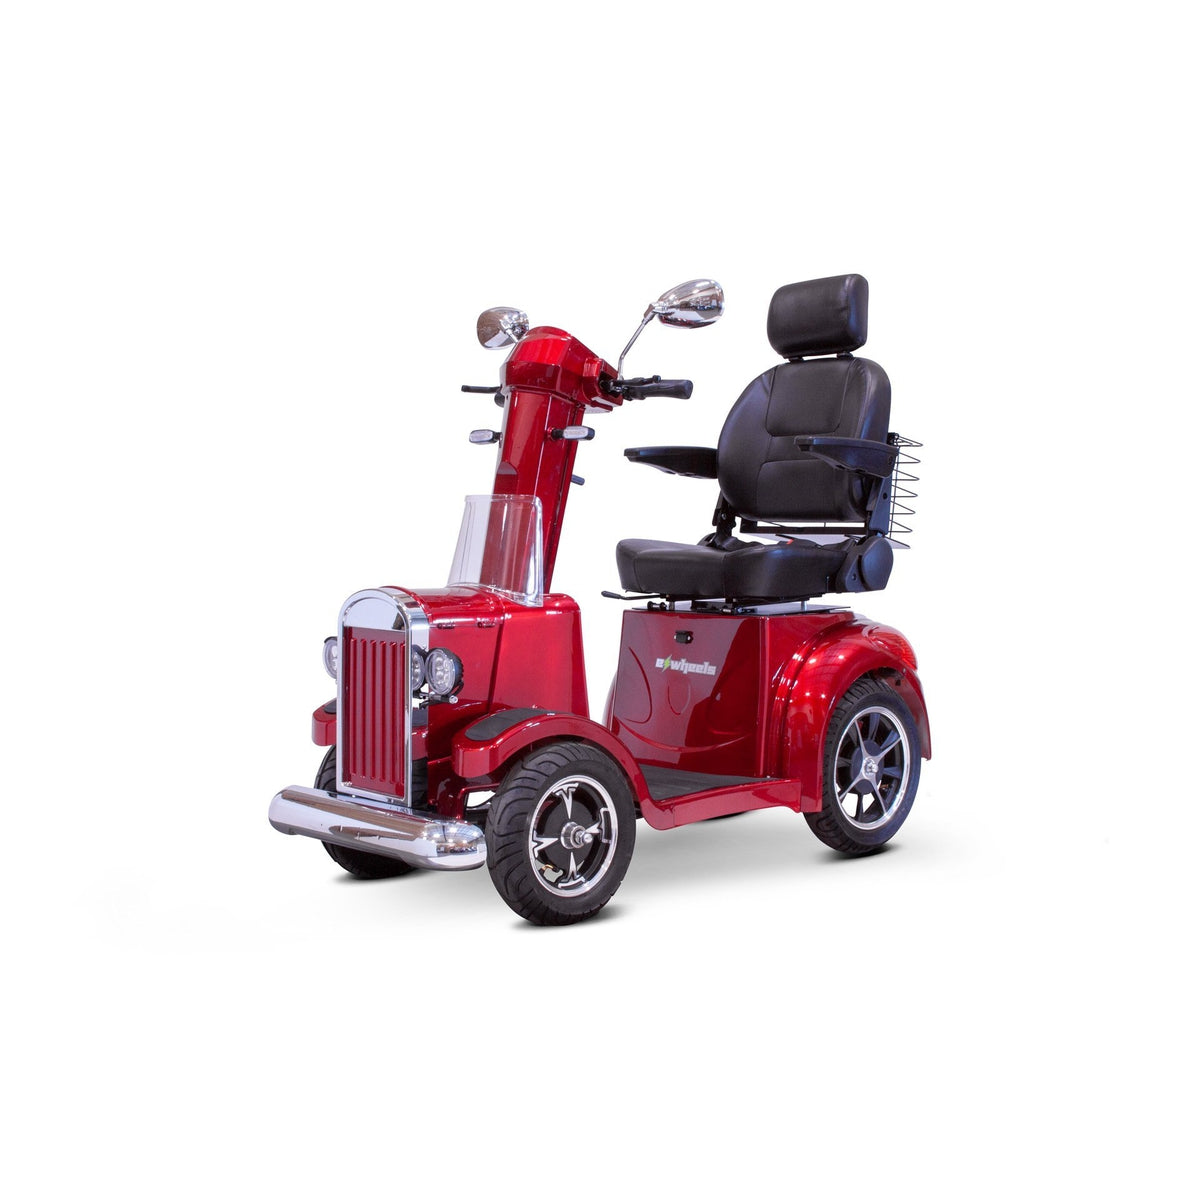 EWheels EW-Vintage 500W 4-Wheel Mobility Scooter